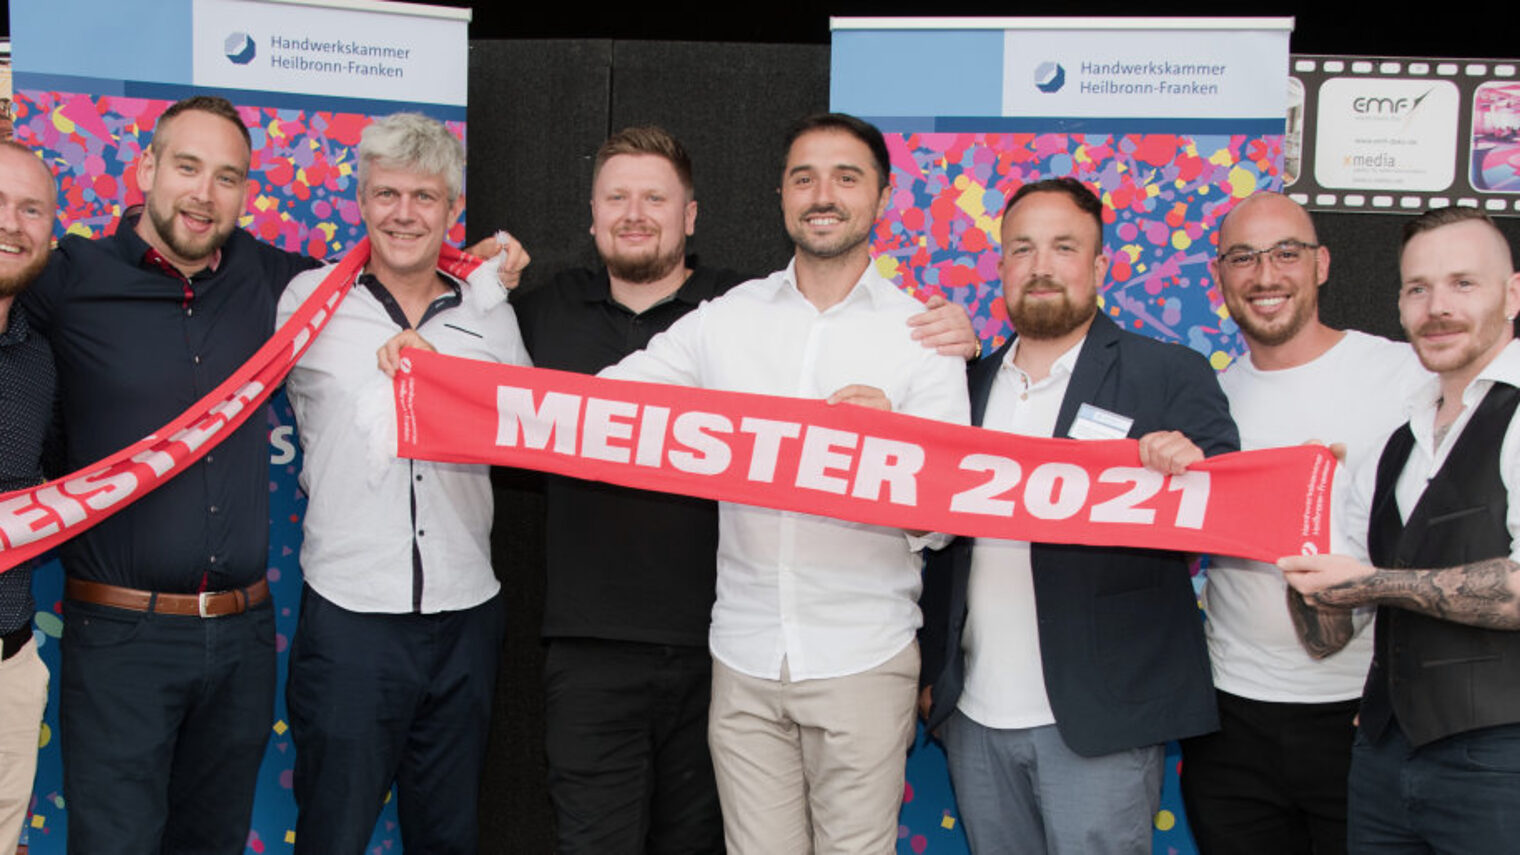 Eine Gruppe von Männern steht nebeneinander und hält zwei rote Schals mit weißer Aufschrift "Meister 2021" in den Händen.